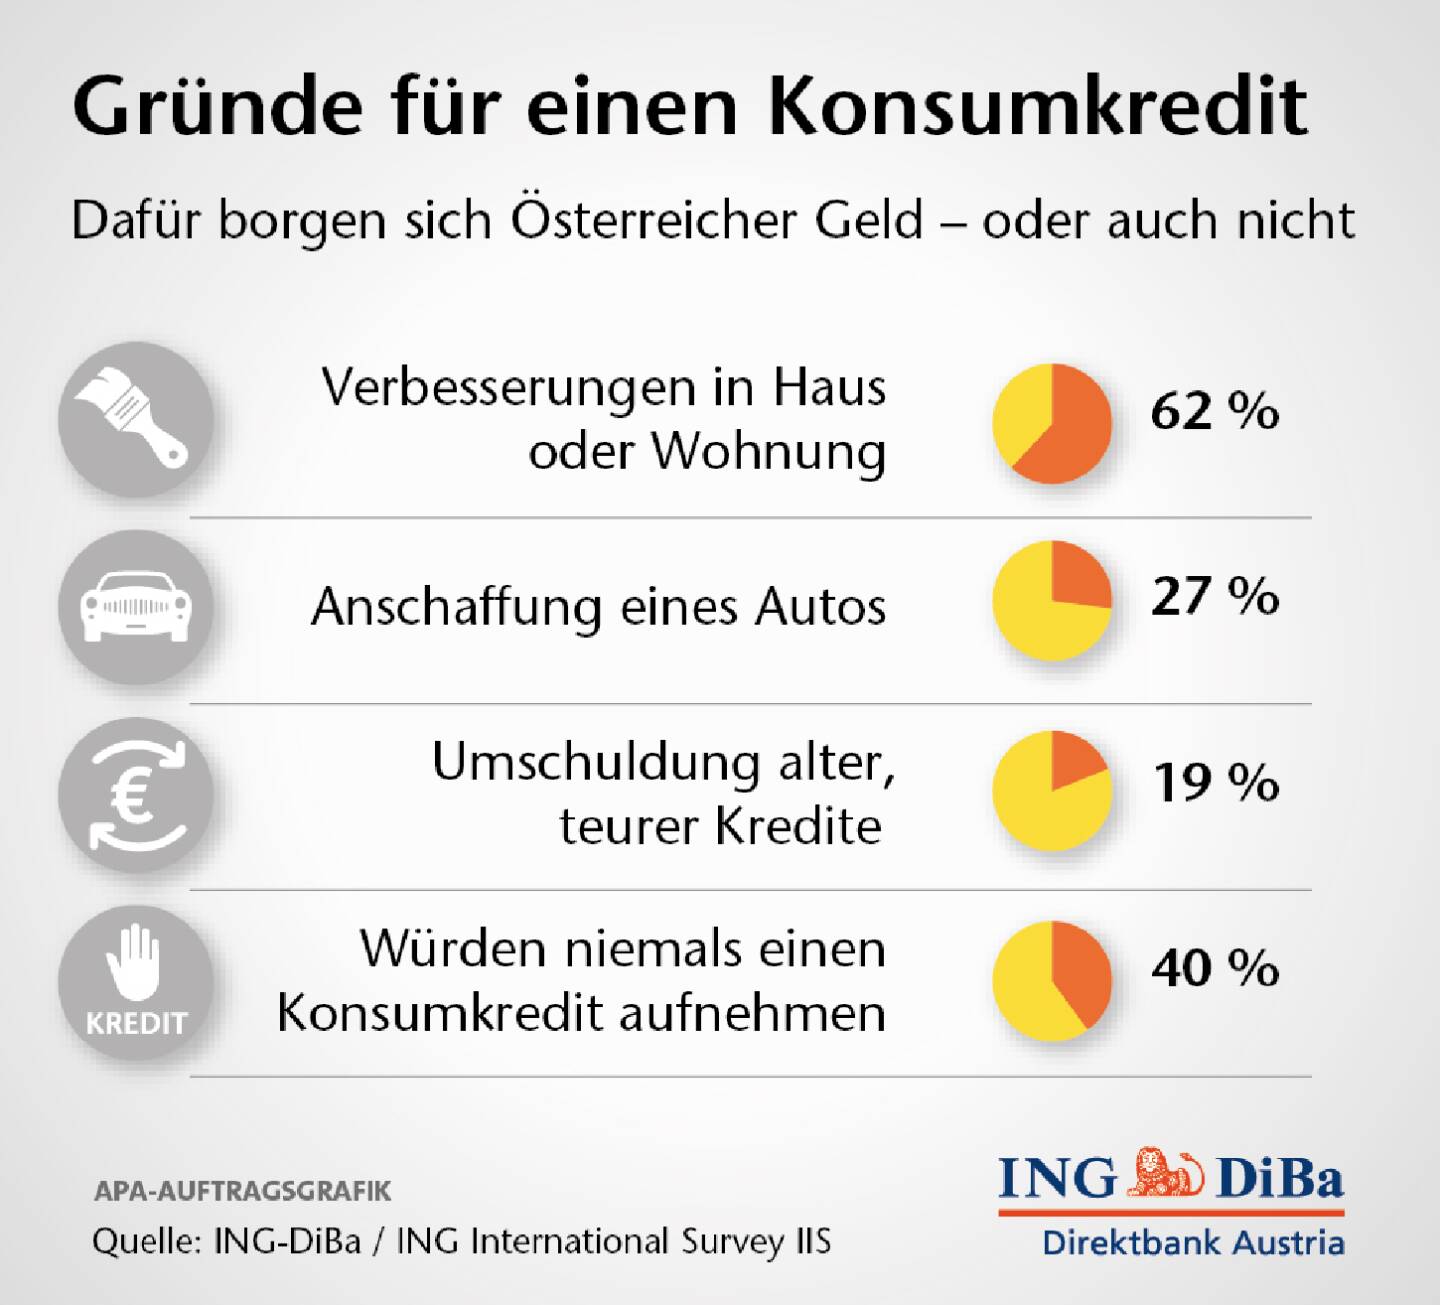 Österreicher sind Fixzinsfans:  47% der Österreicher zeigen großes Interesse an Fixzinskrediten. Sie möchten sich die derzeit geltenden niedrigen Zinsen über die gesamte Laufzeit sichern, so die Ergebnisse der Ipsos-Umfrage der ING-DiBa 
